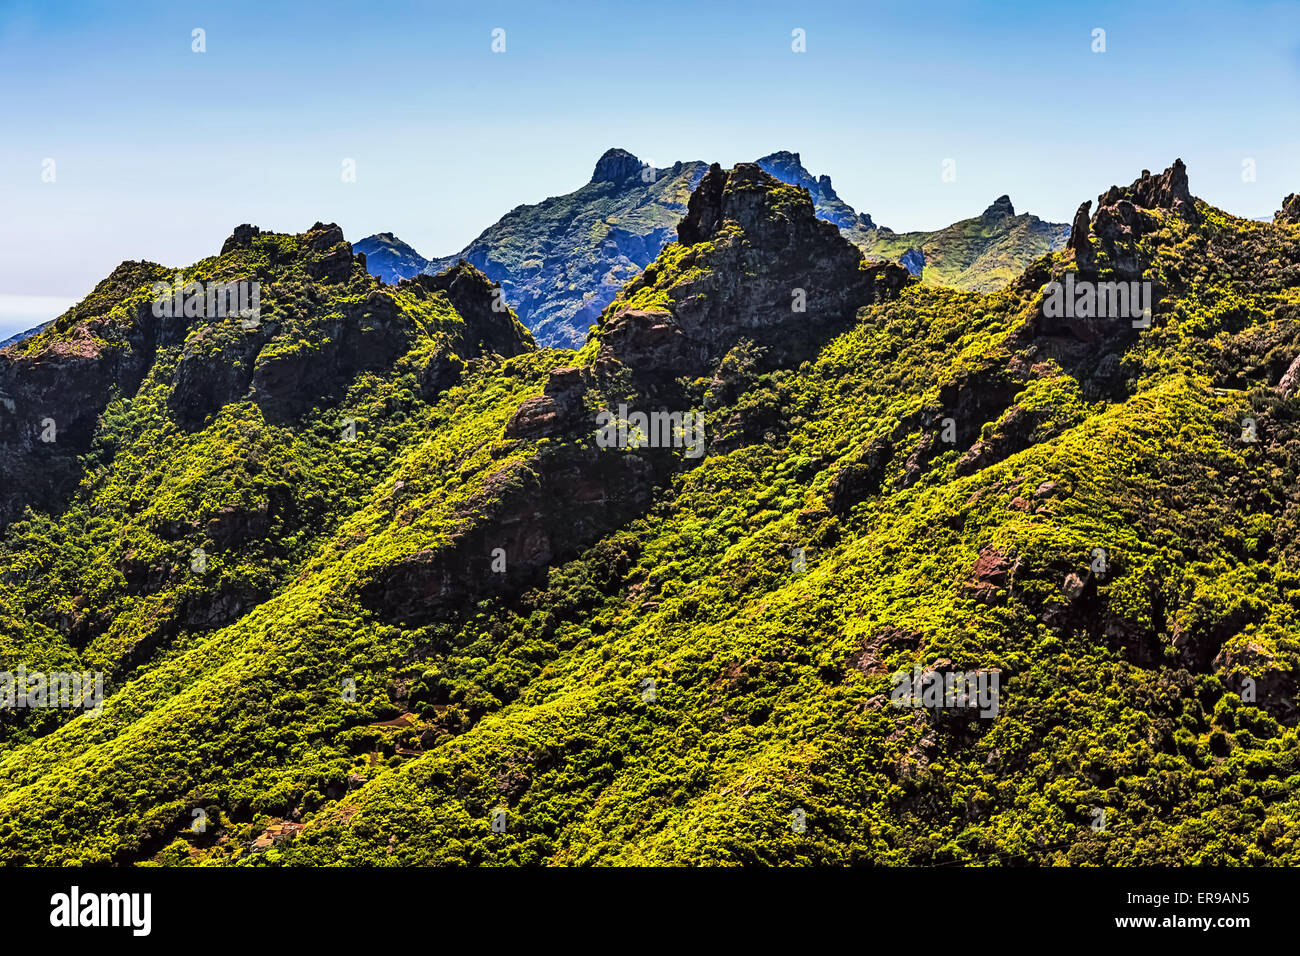 Le vert des montagnes ou des rochers et ciel bleu paysage dans l'île de Ténérife, Espagne Banque D'Images